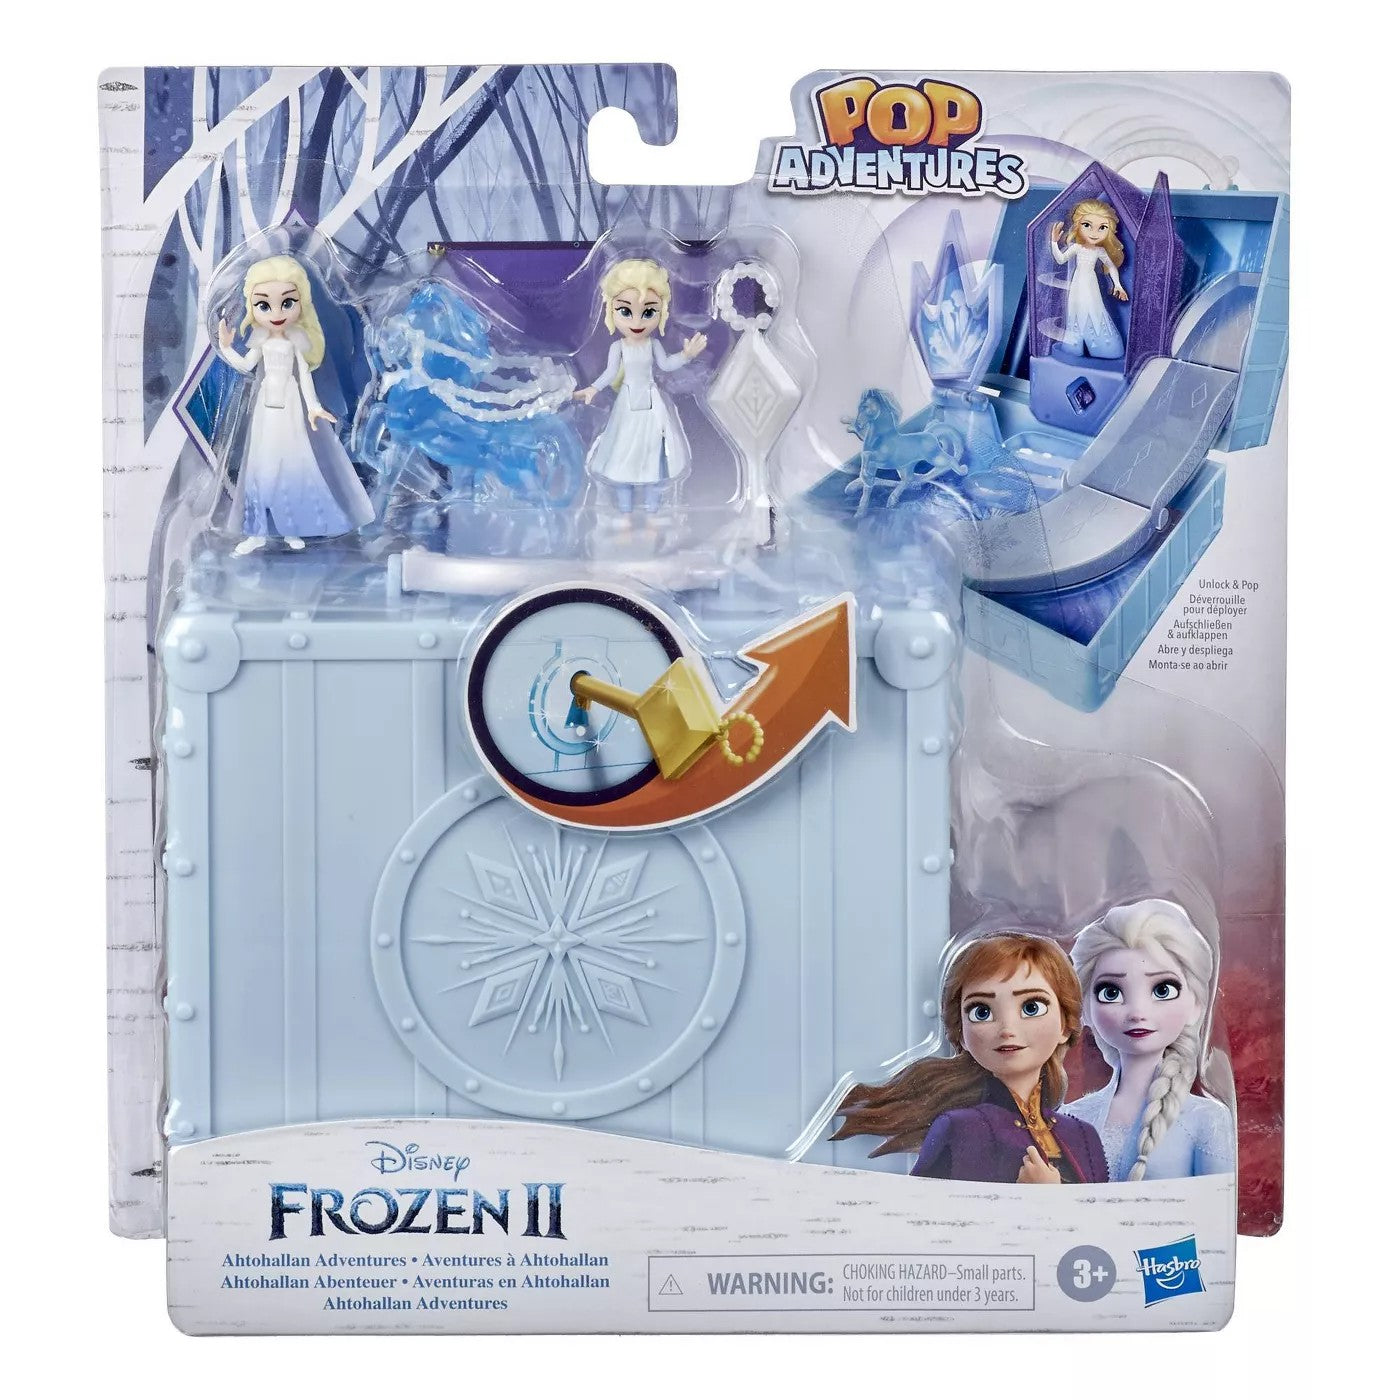 Frozen II: Pop Adventures